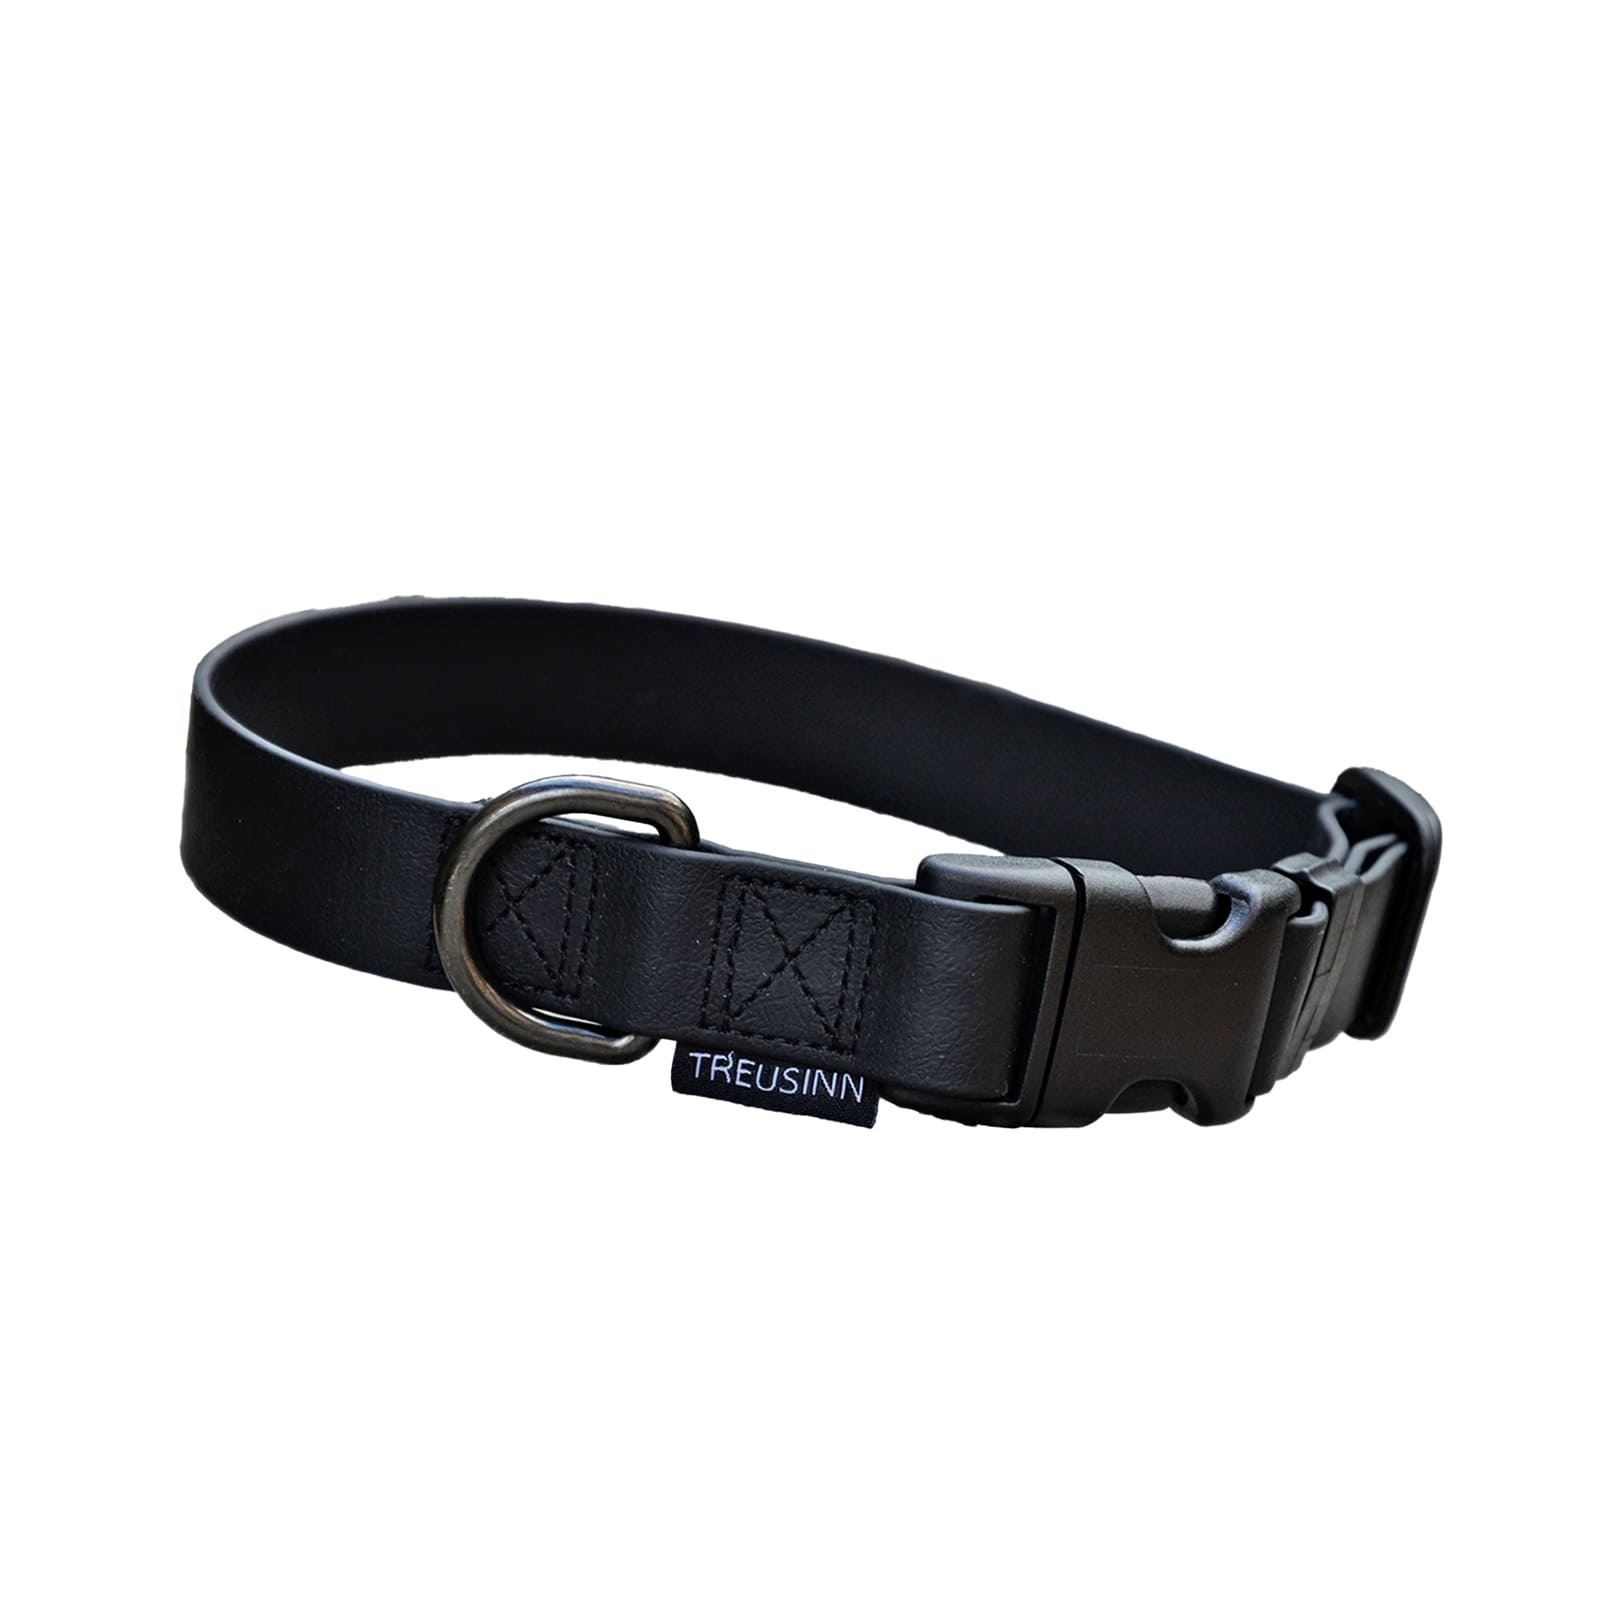 Schwarzes Hundehalsband mit schwarzem Klickverschluss und Schwarzer Öse für Leinen